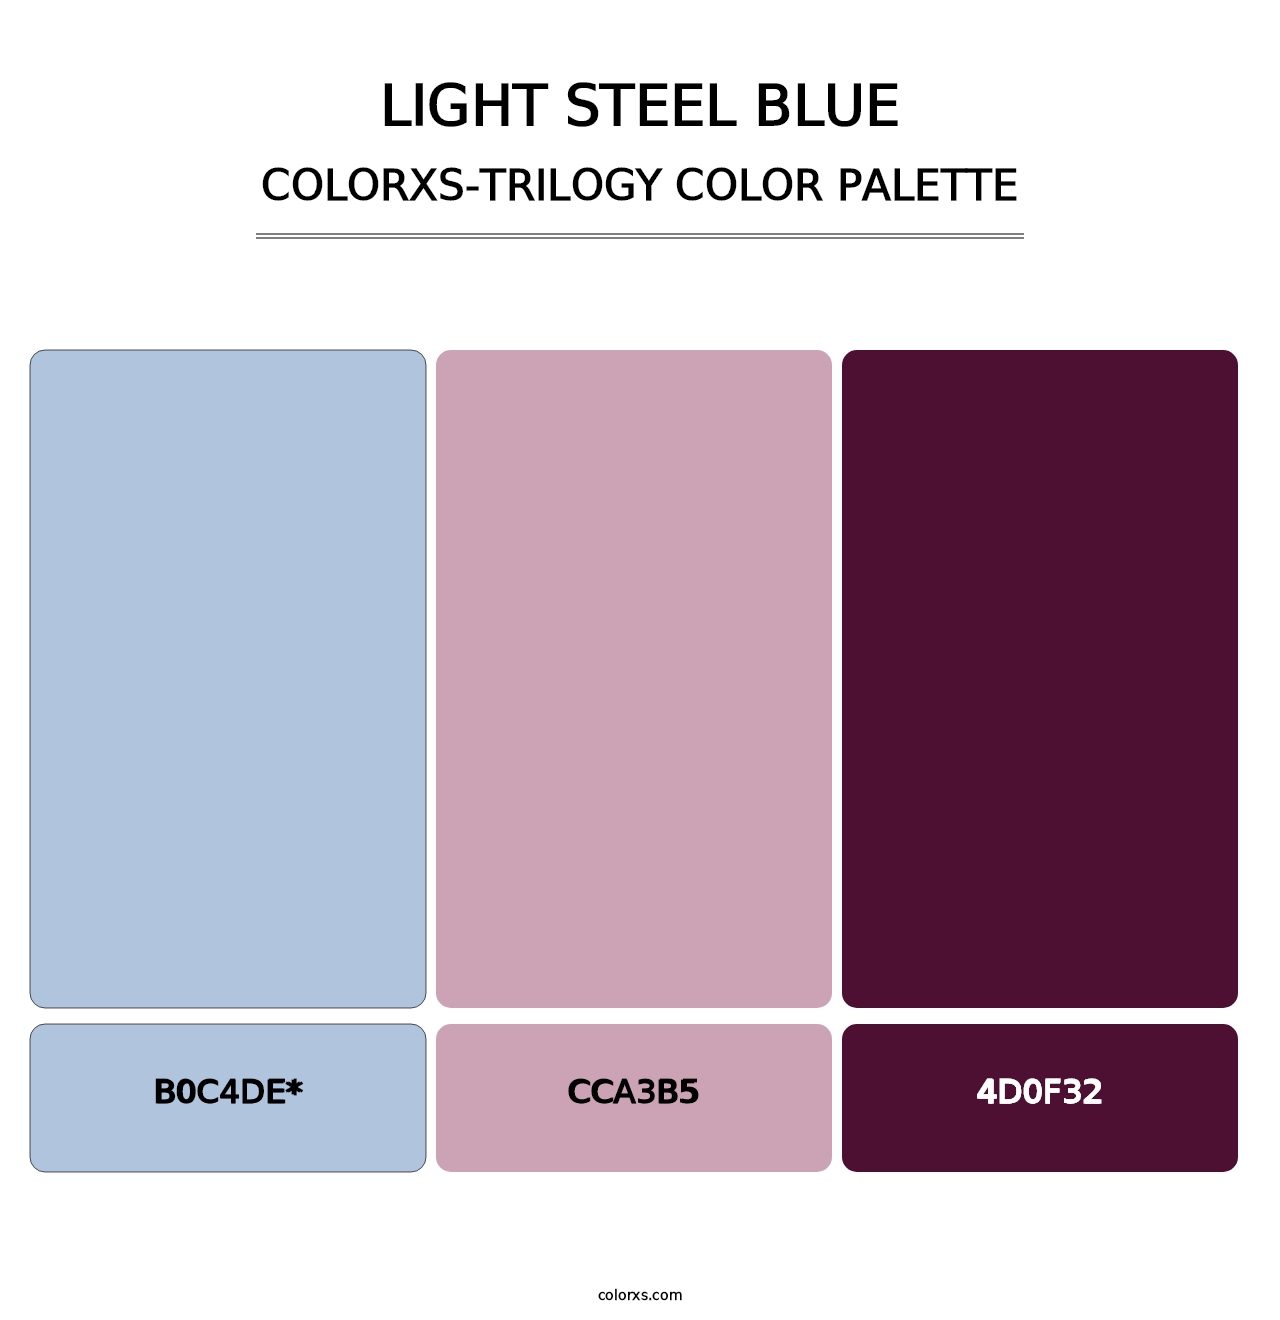 Light Steel Blue - Colorxs Trilogy Palette